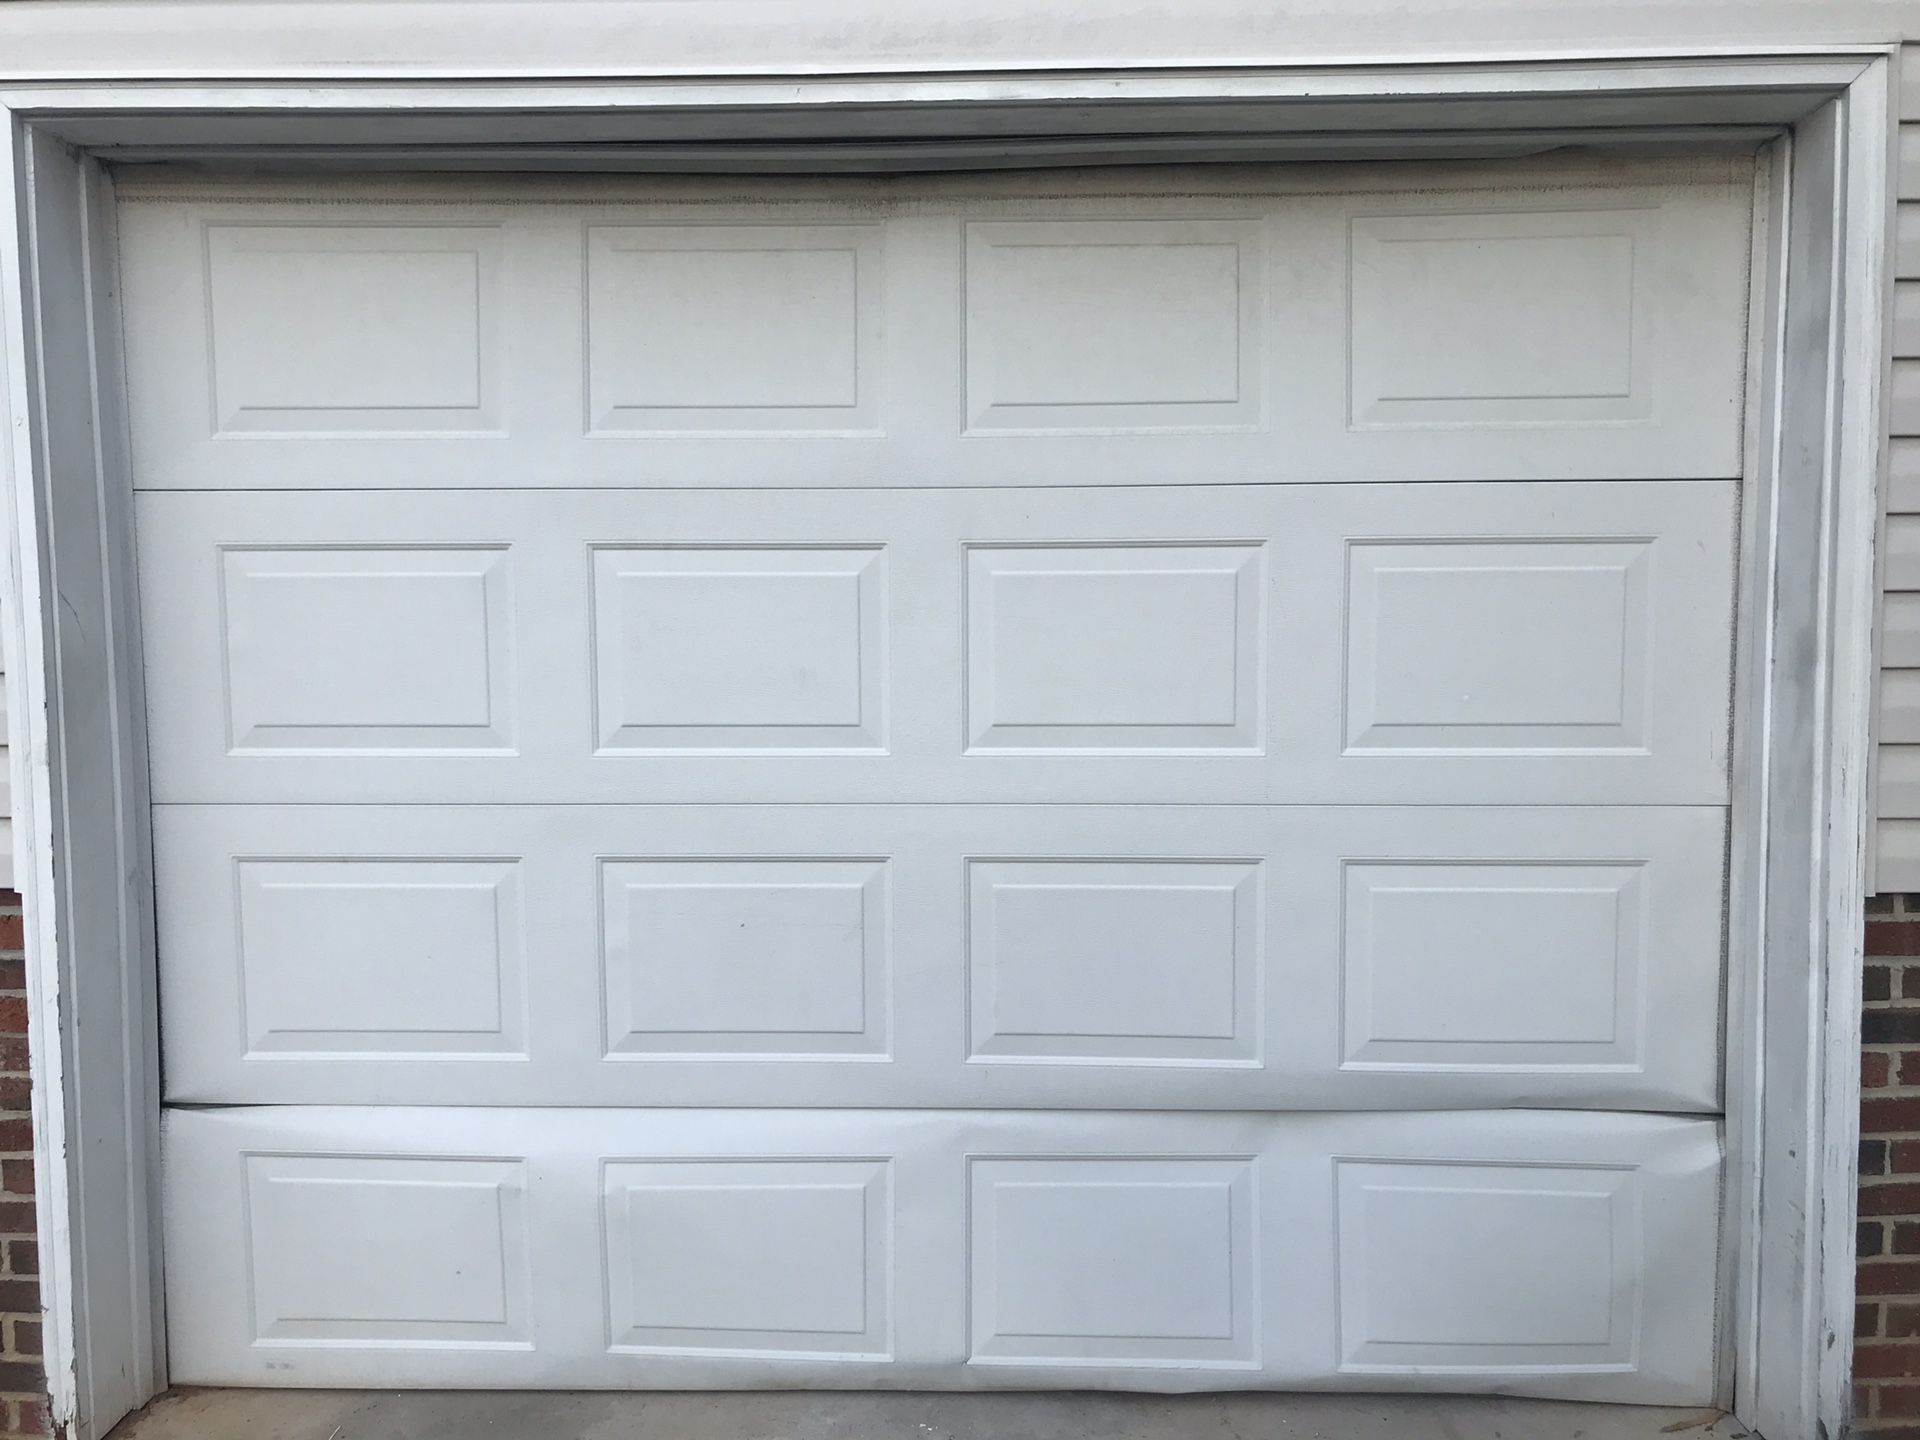 9’x7’ Garage Door